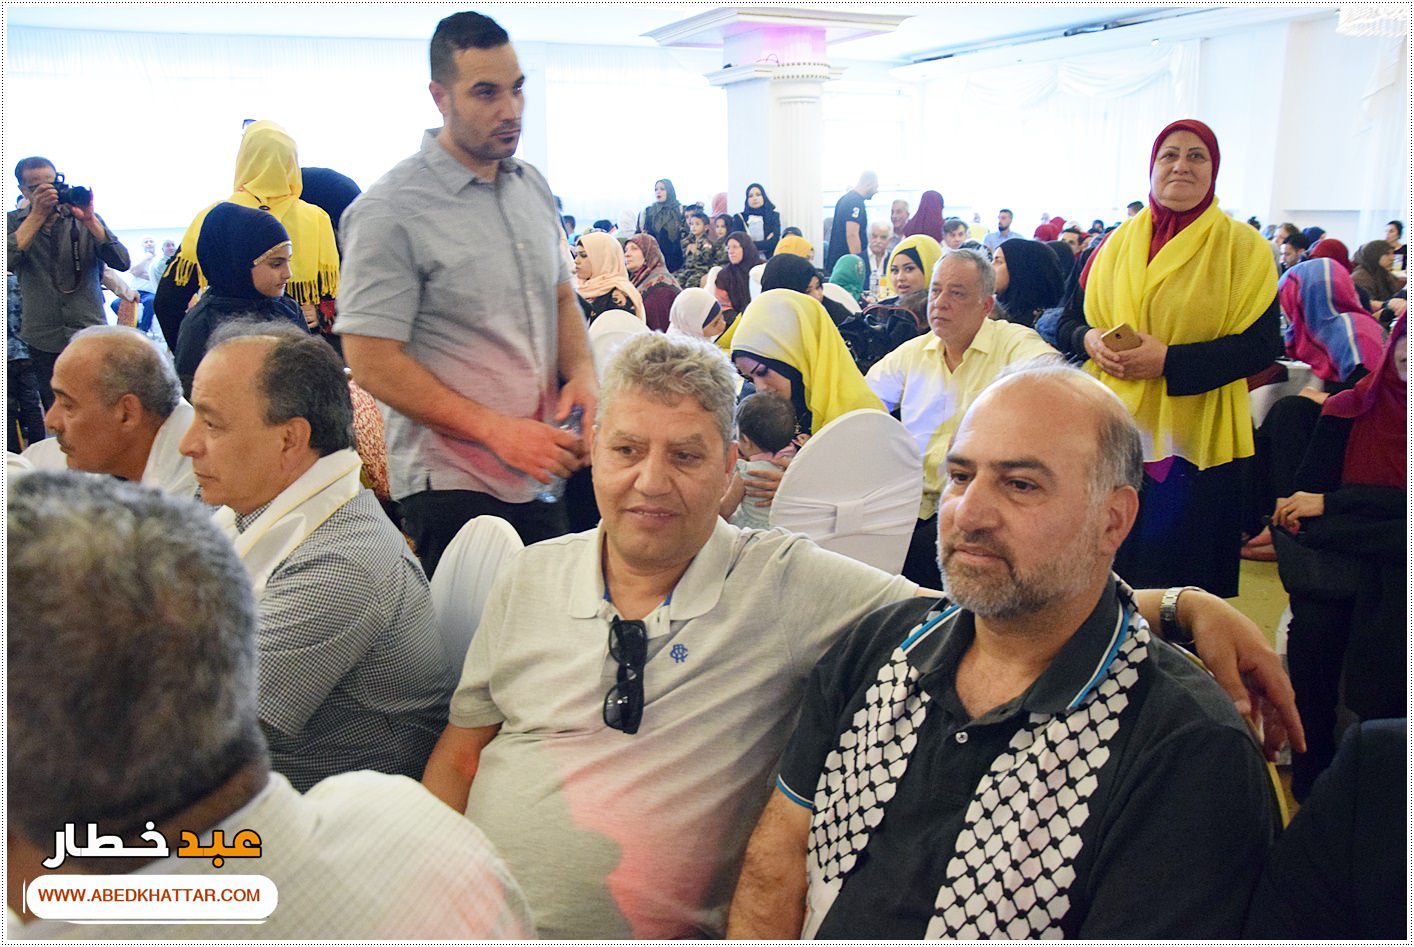 جمعية الإرشاد والجمعيات اللبنانية اقامت احتفال بمناسبة عيد النصر والتحرير بحضور الآعلامي سالم زهران